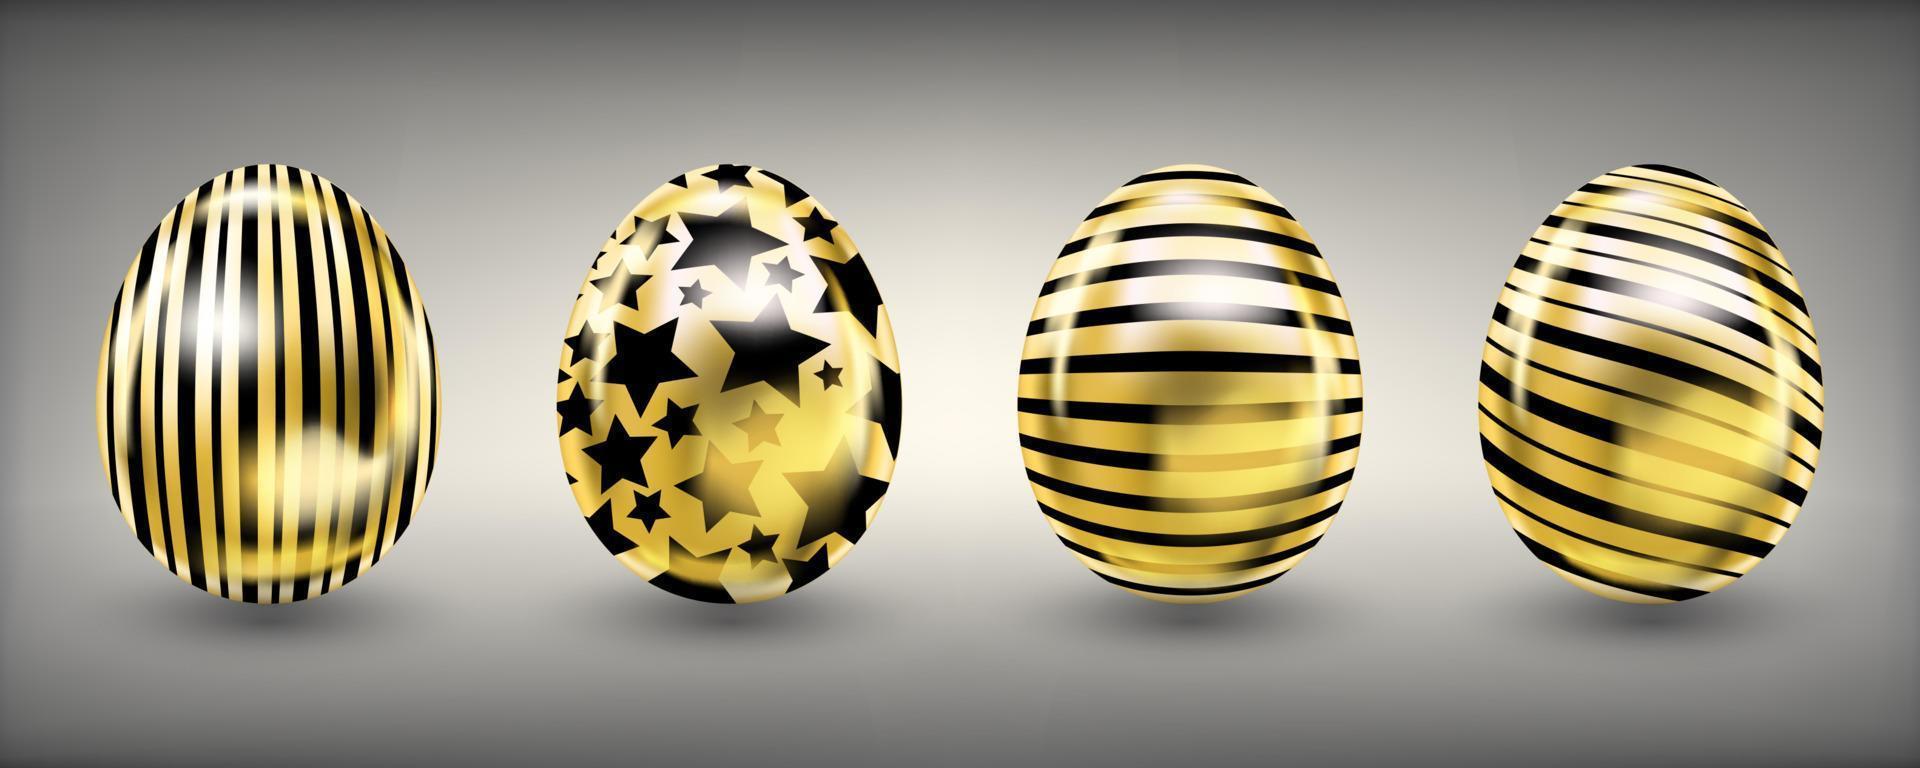 ovos de ouro de relance brilhante de páscoa com estrelas e listras pretas vetor